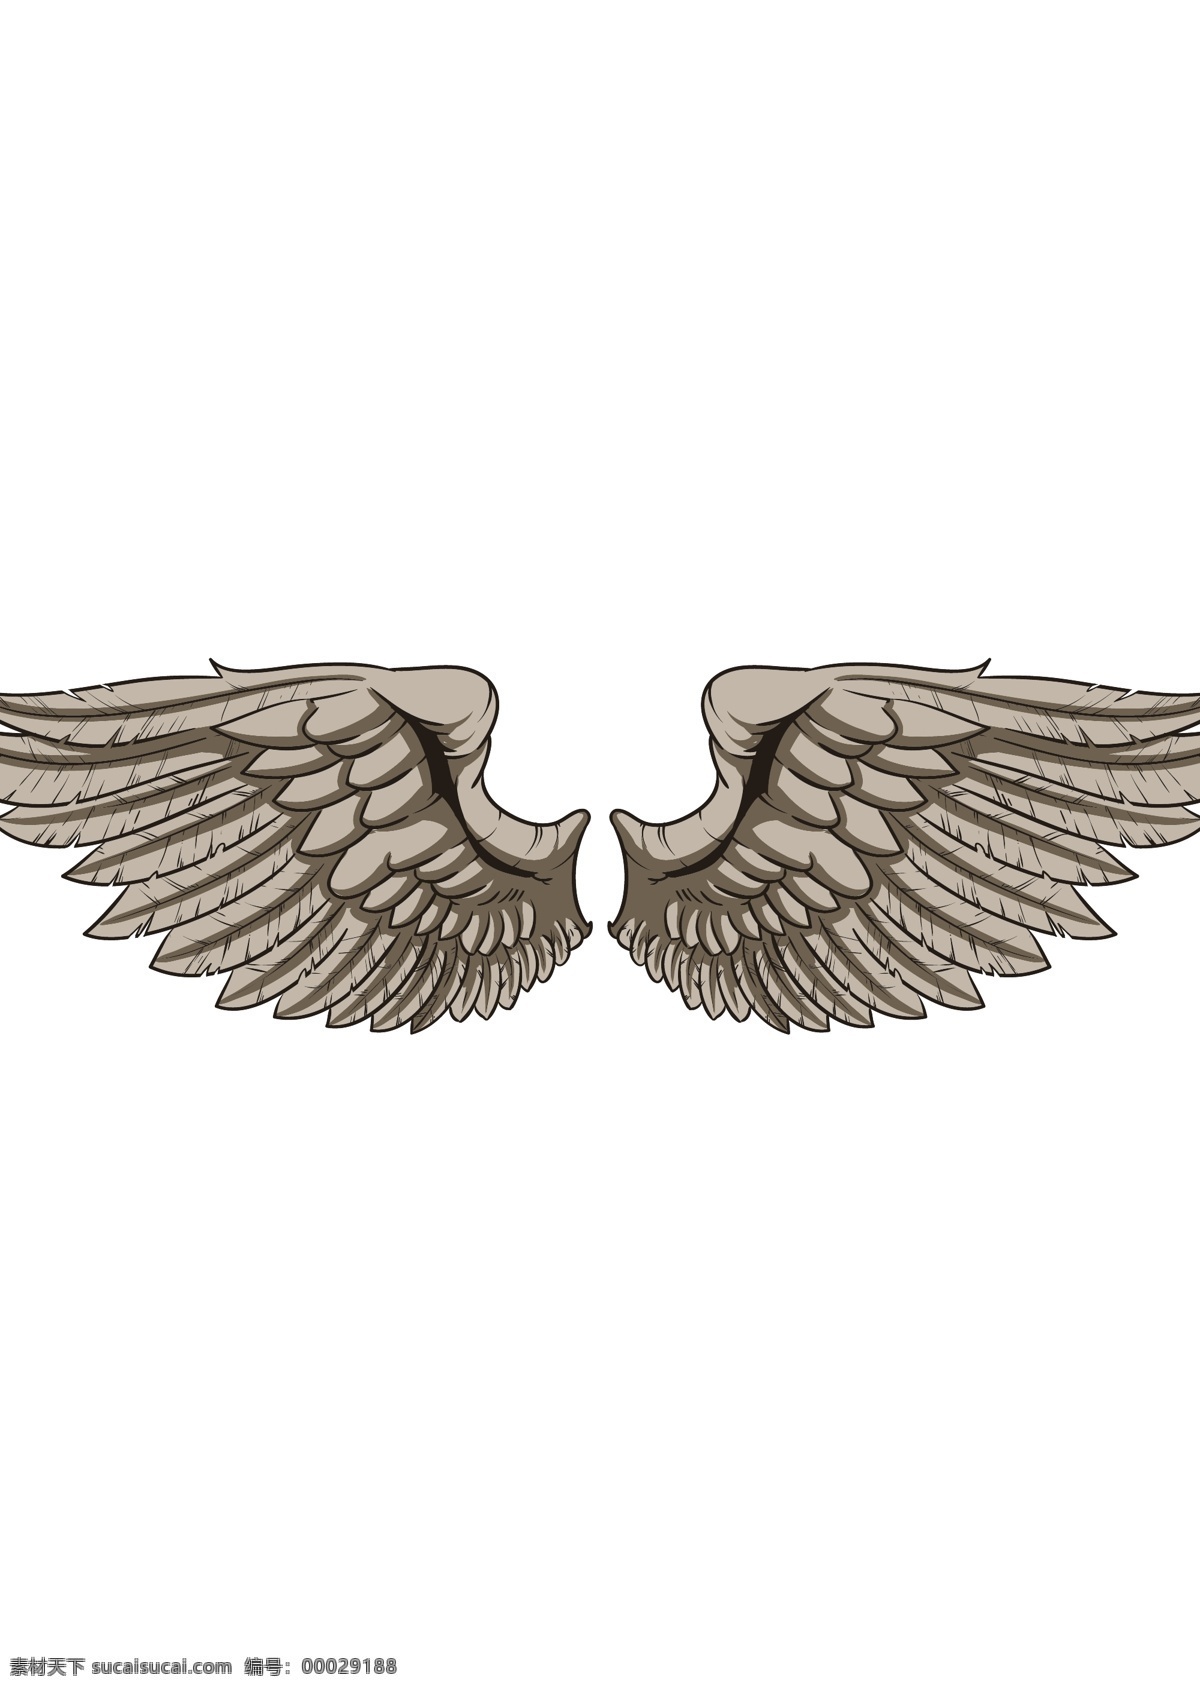 手绘 矢量 复古 线 稿 翅膀 天使 卡通 矢量素材 平面设计素材